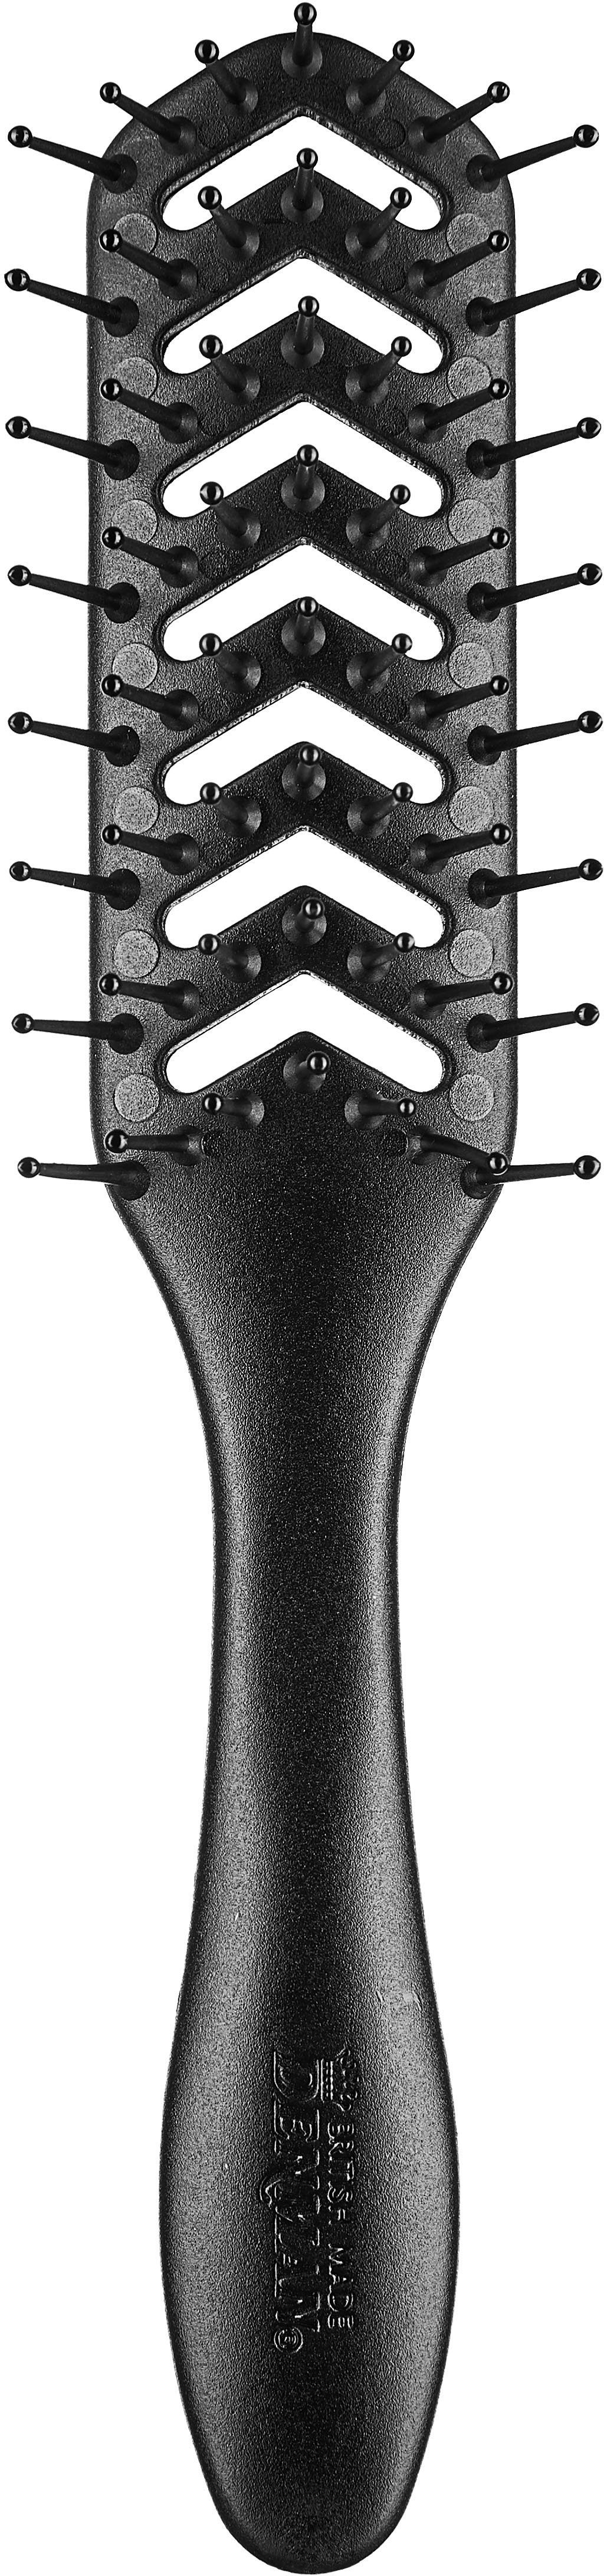 DENMAN Skelettbürste D200 Skelettbürste, 7-reihig, für optimales Styling durch maximale Luftzirkulation schwarz | Haarbürsten